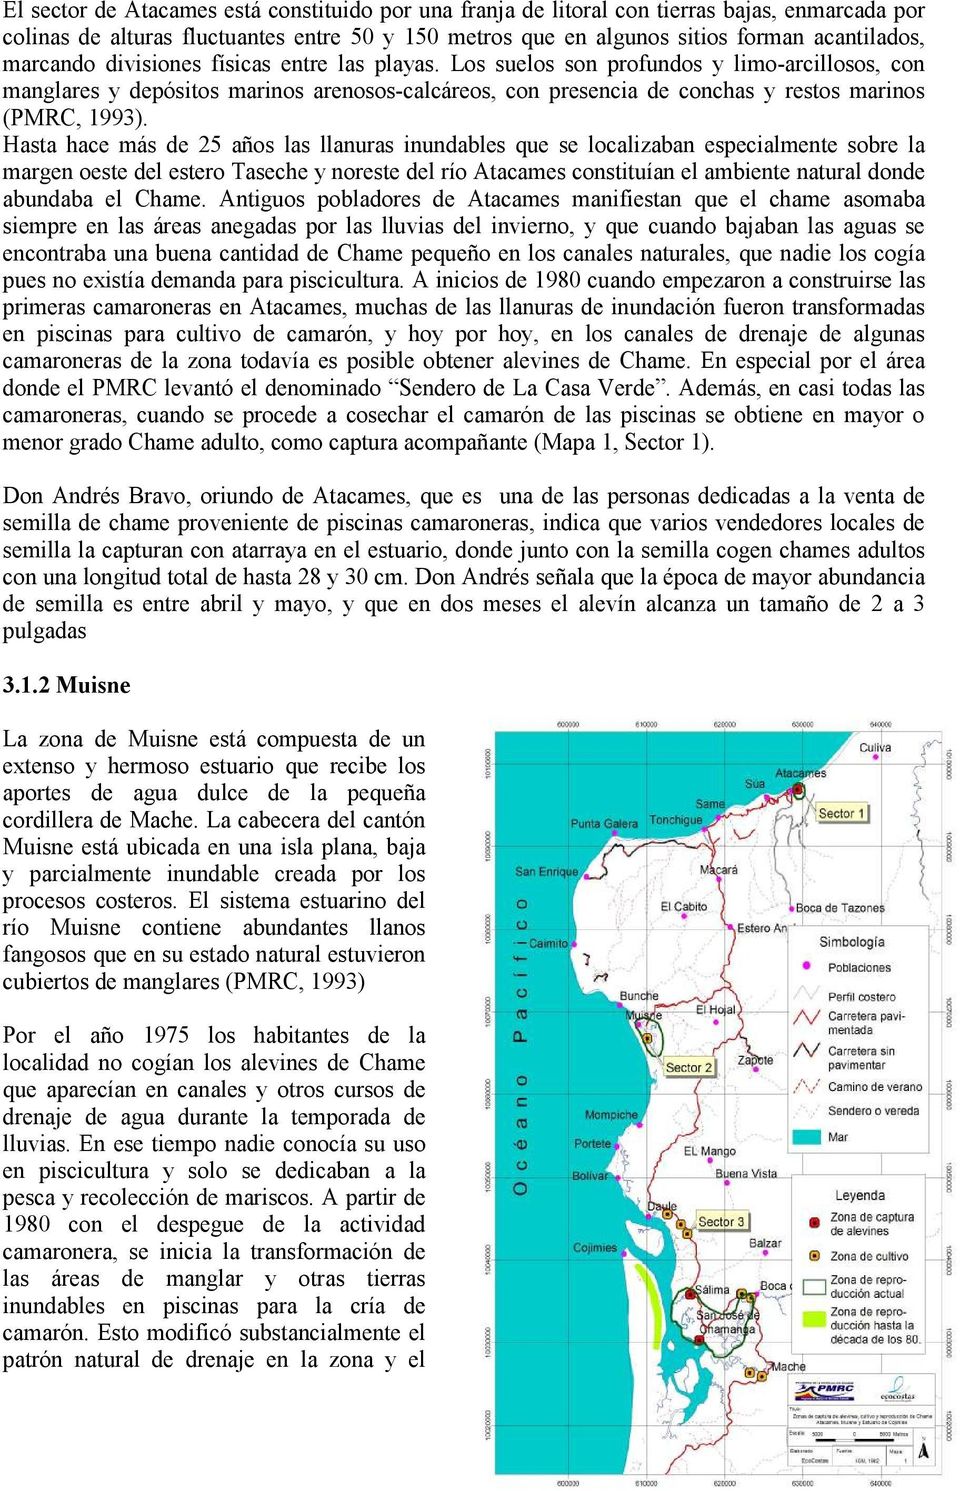 Hasta hace más de 25 años las llanuras inundables que se localizaban especialmente sobre la margen oeste del estero Taseche y noreste del río Atacames constituían el ambiente natural donde abundaba